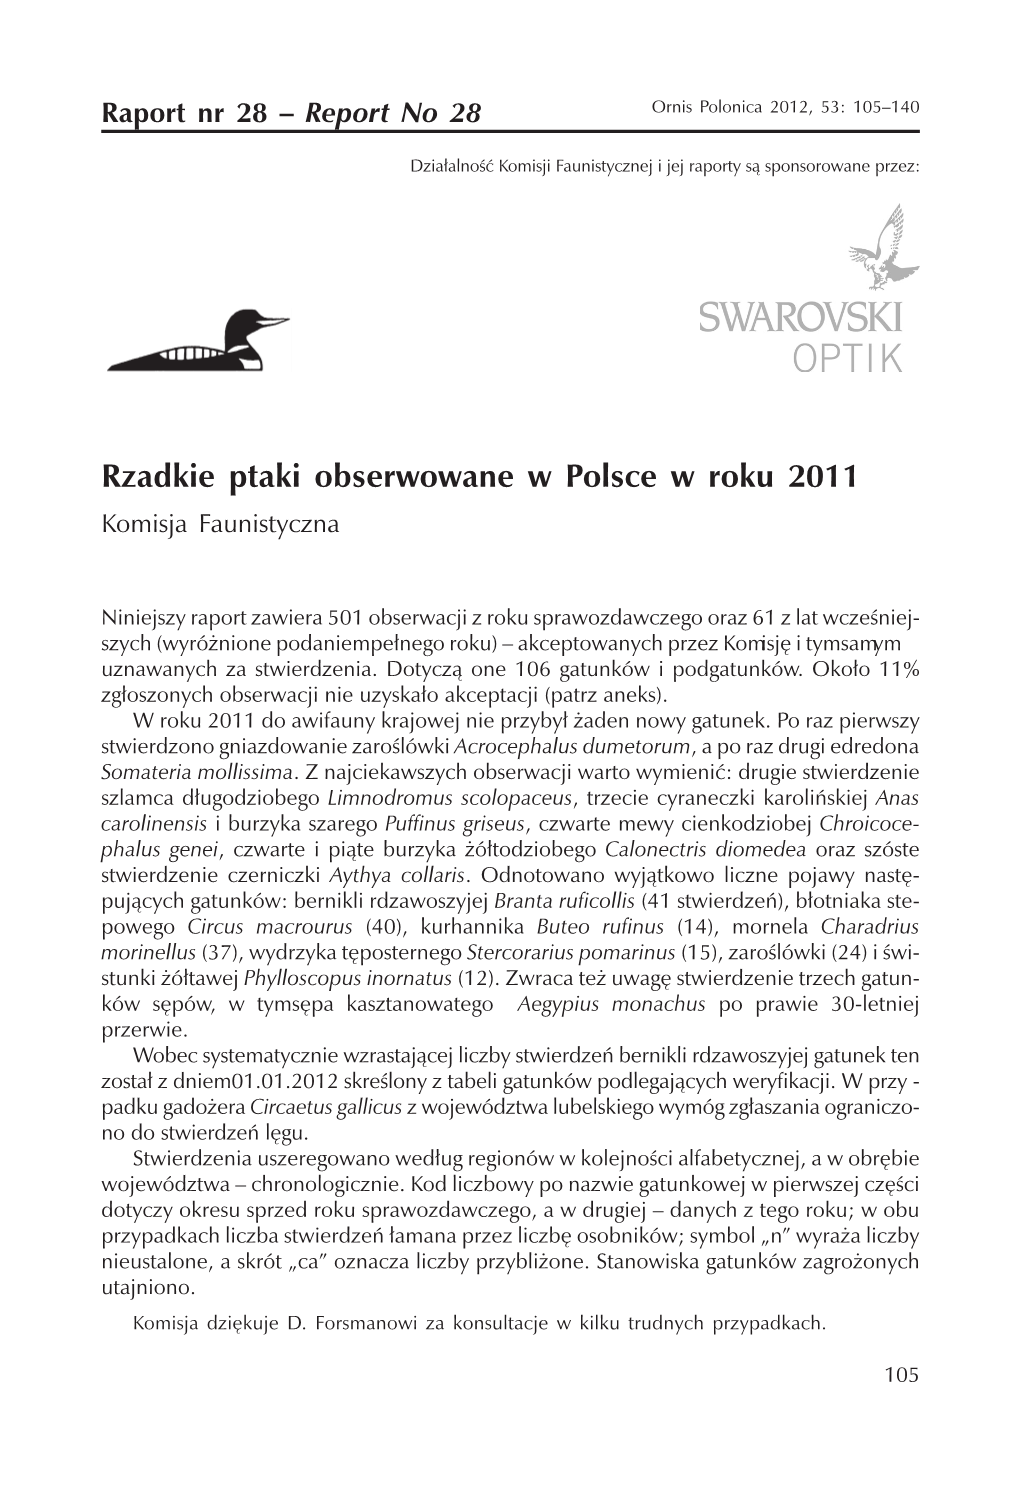 Rzadkie Ptaki Obserwowane W Polsce W Roku 2011 Komisja Faunistyczna